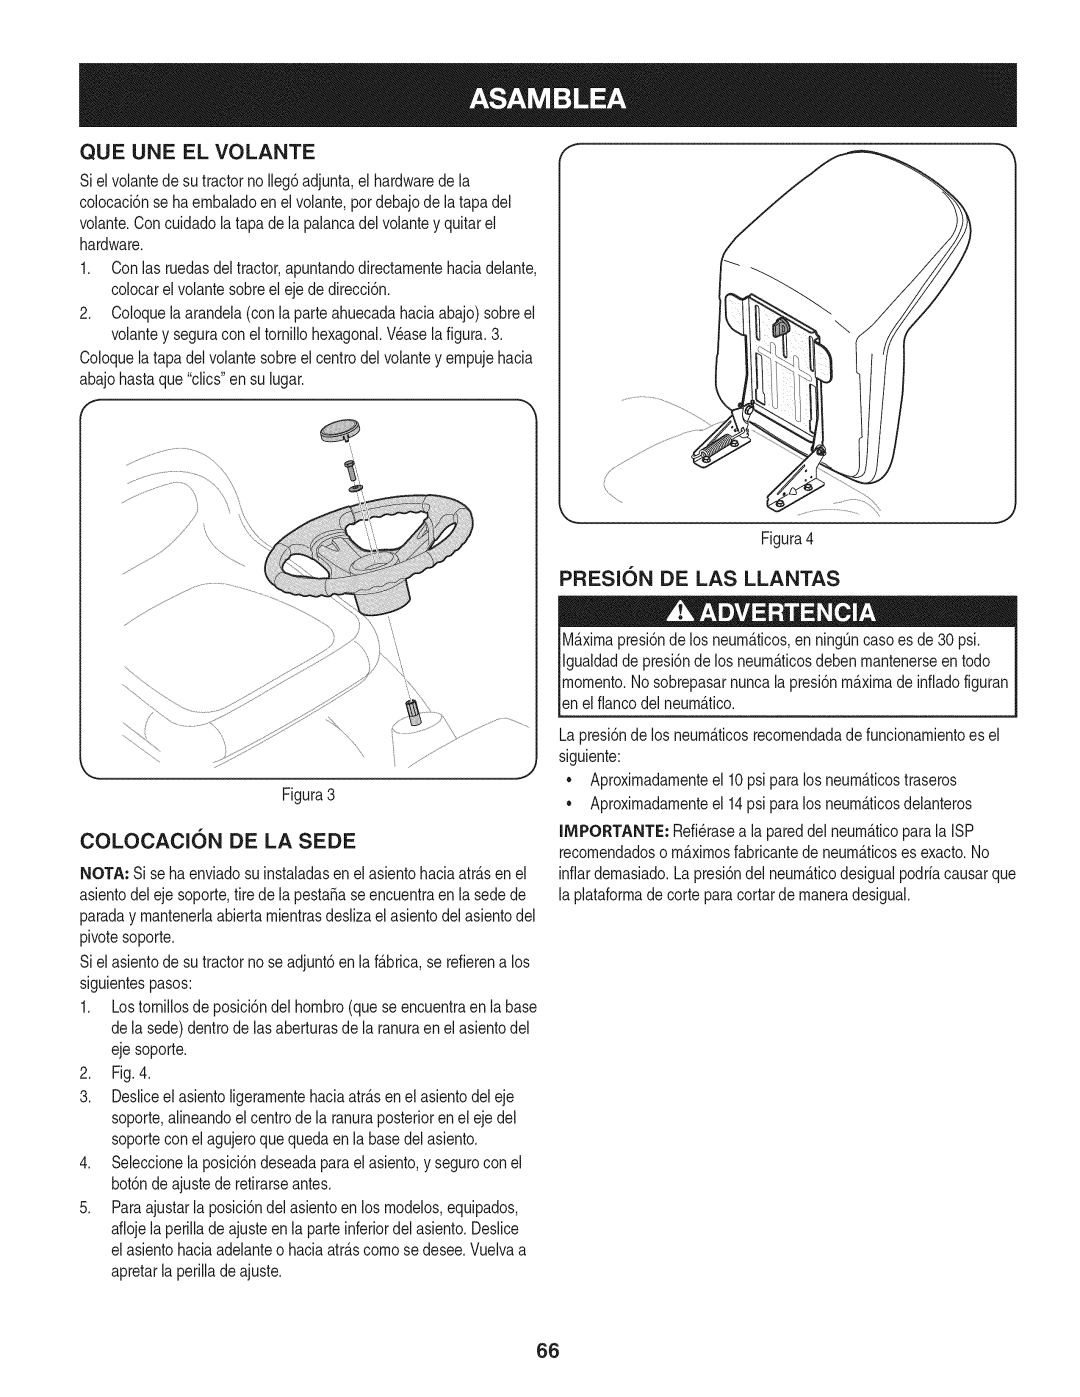 Craftsman 247.28901 manual Que Une El Volante, PRESlON DE LAS LLANTAS, Colocacion De La Sede 